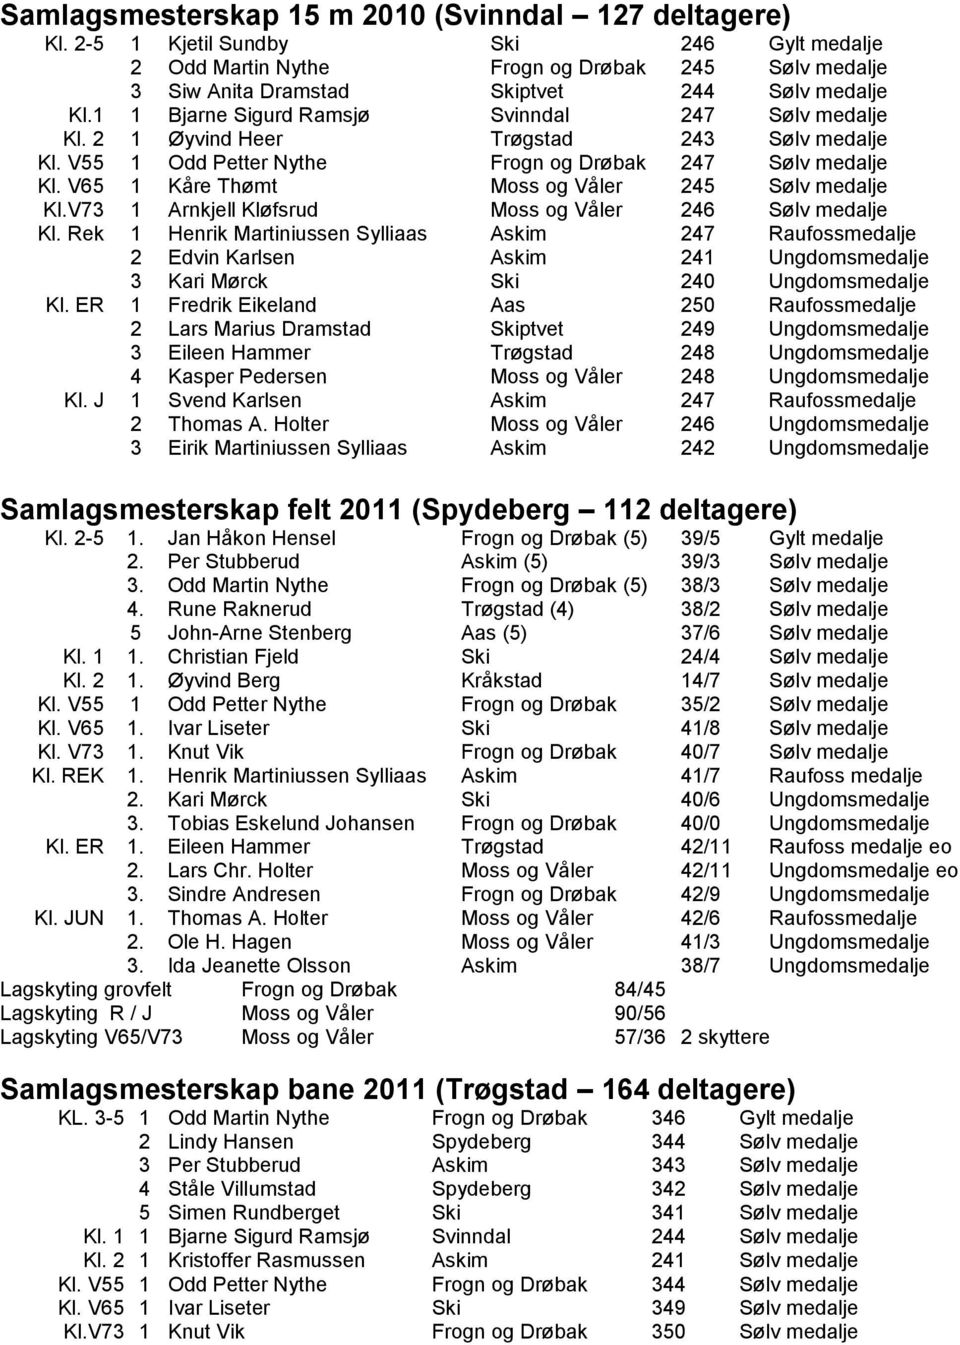 V65 1 Kåre Thømt Moss og Våler 245 Sølv medalje Kl.V73 1 Arnkjell Kløfsrud Moss og Våler 246 Sølv medalje Kl.